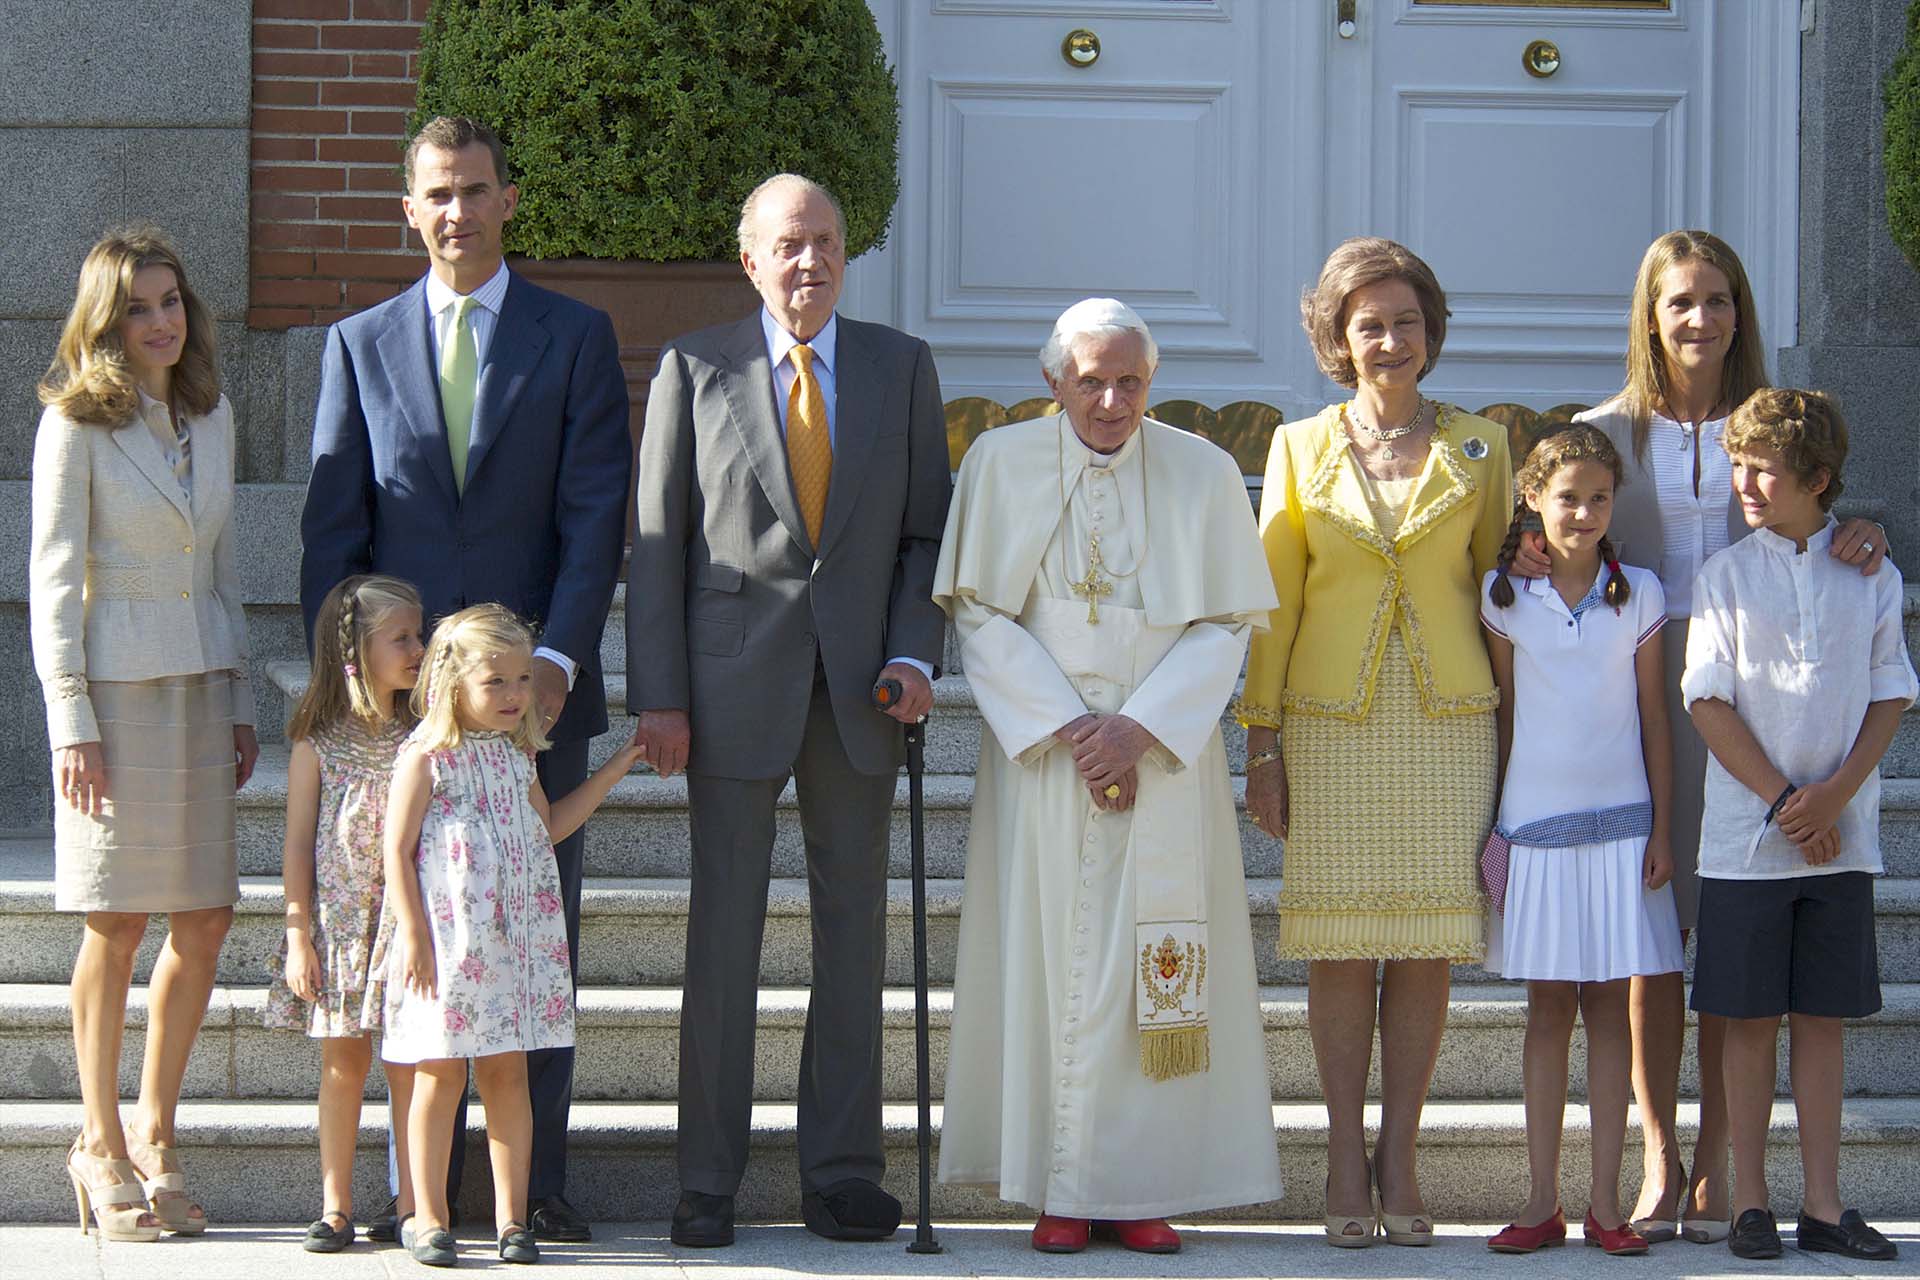 Agosto de 2011. El rey Juan Carlos posa junto al papa Benedicto XVI y toda su familia en la Zarzuela, Madrid (Shutterstock)